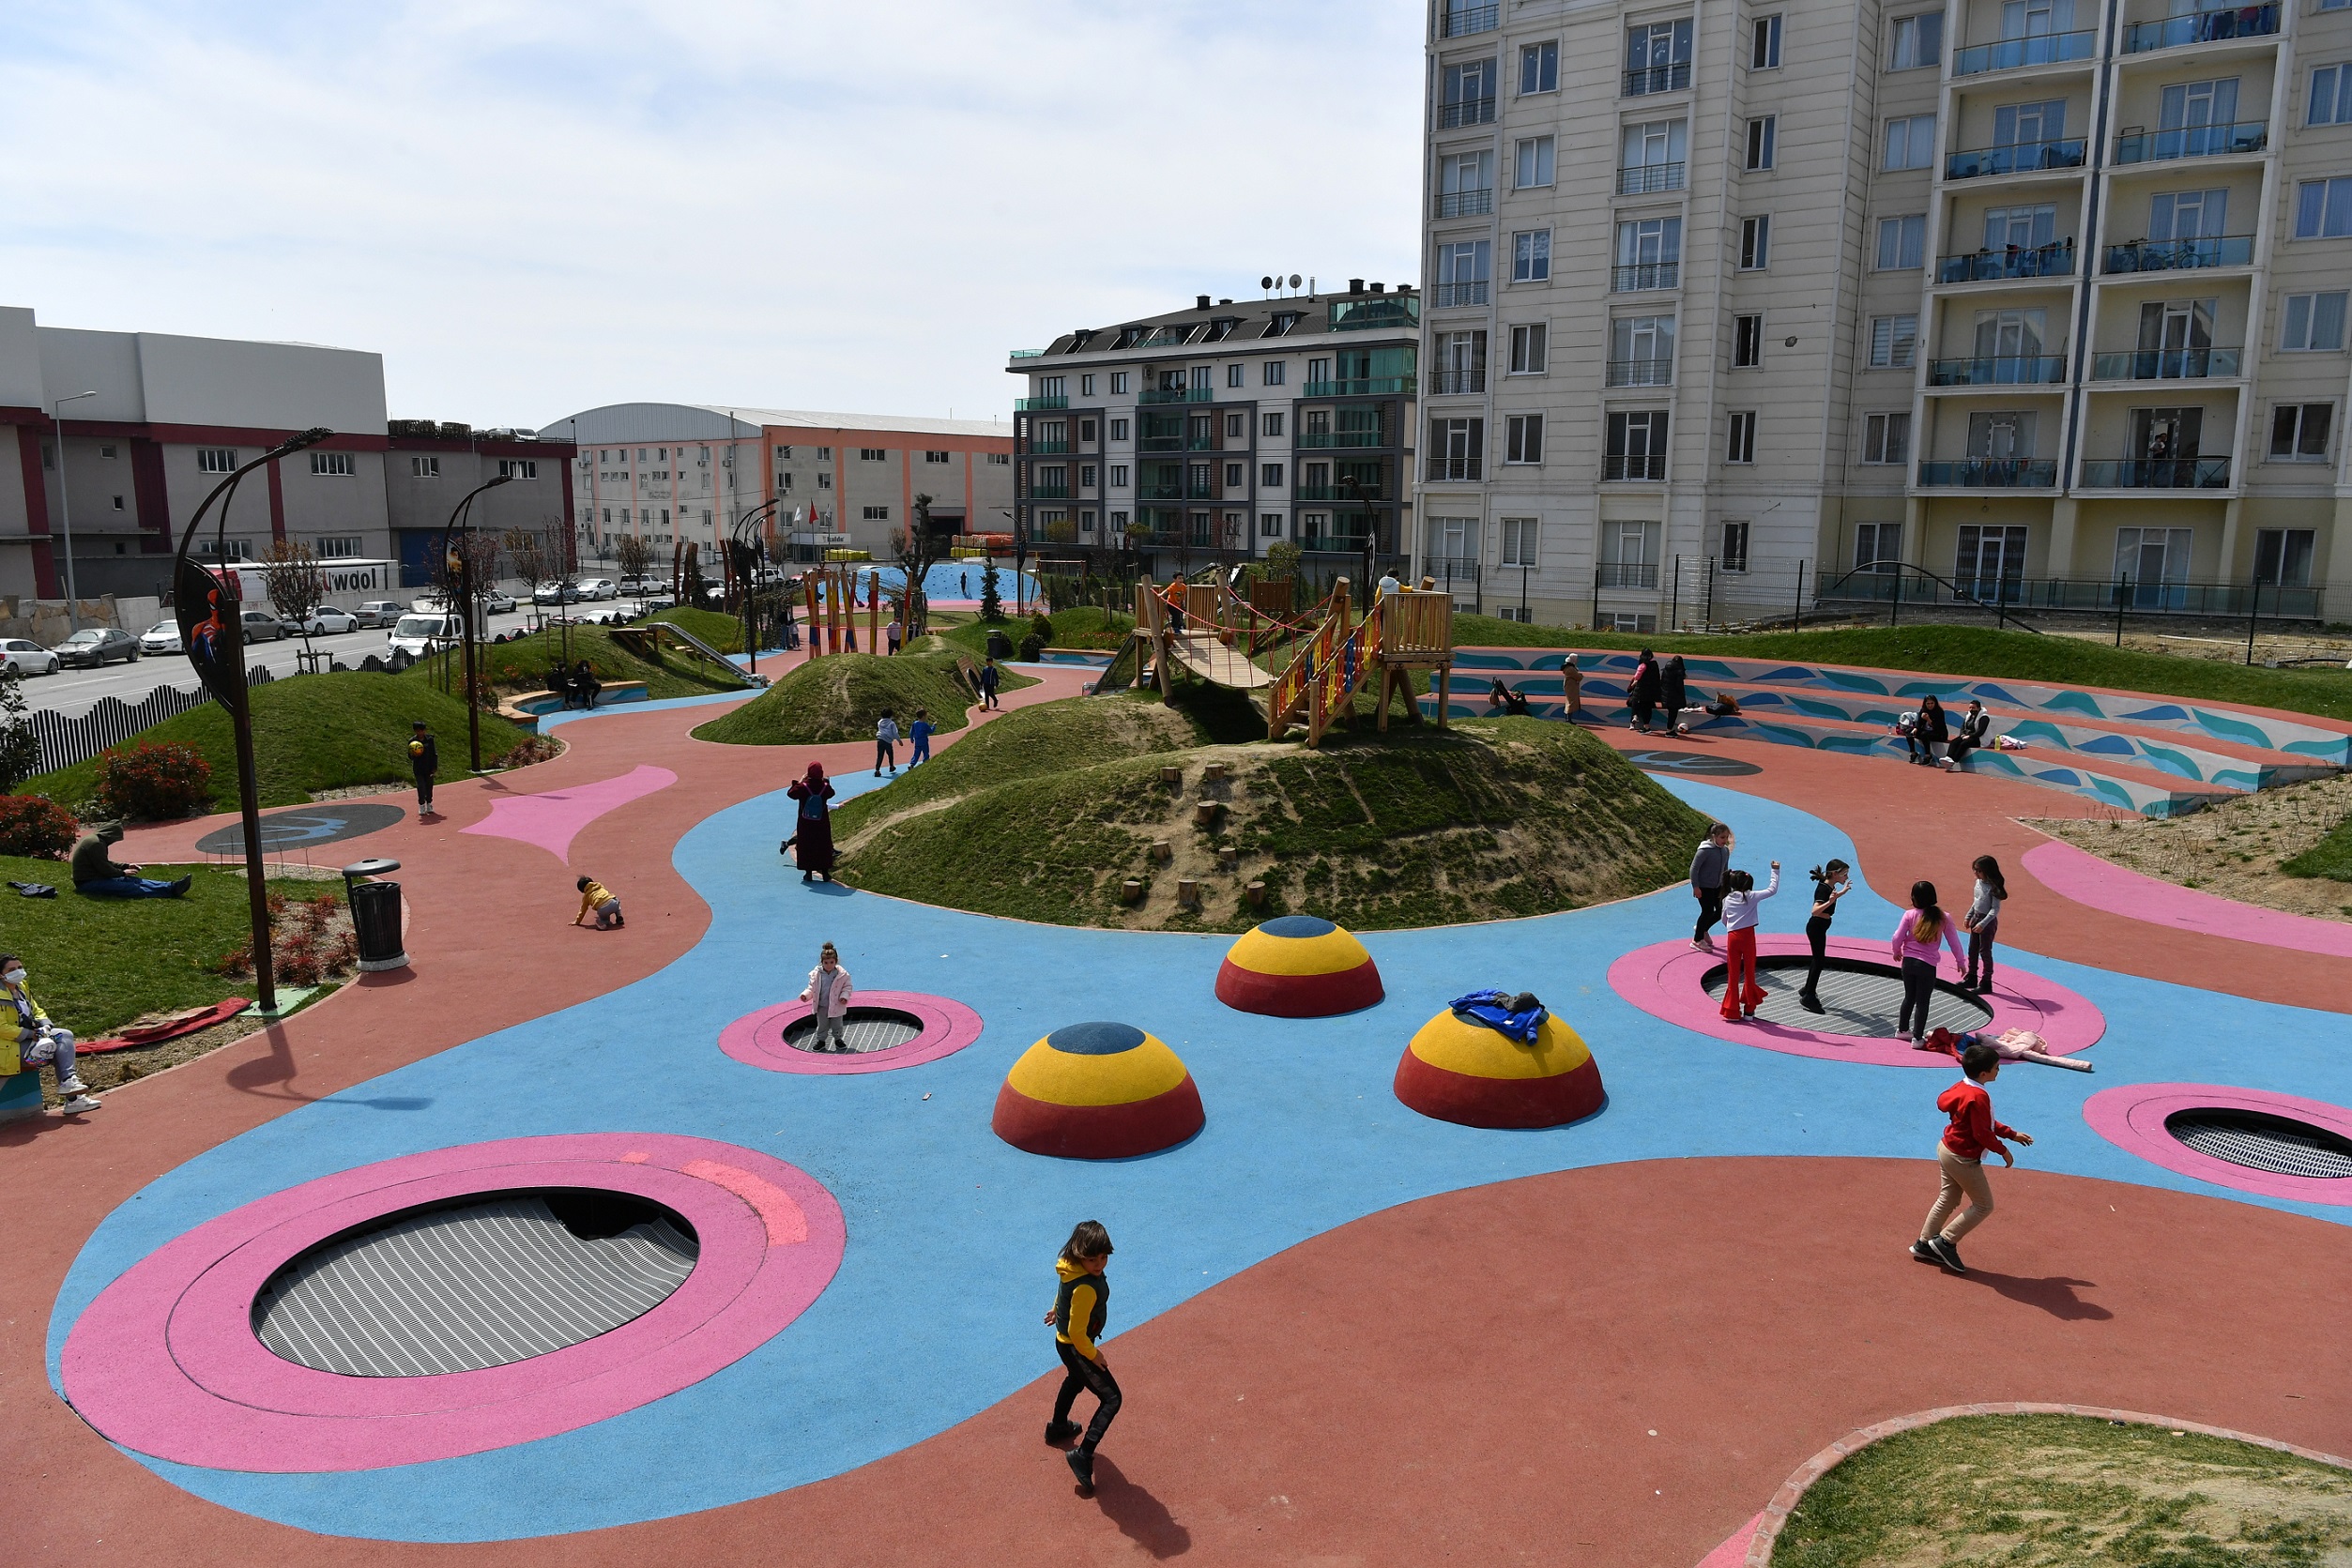  Beylikdüzü’nde Donanımlı ve Rengarenk Yeni Parklar Yapıldı